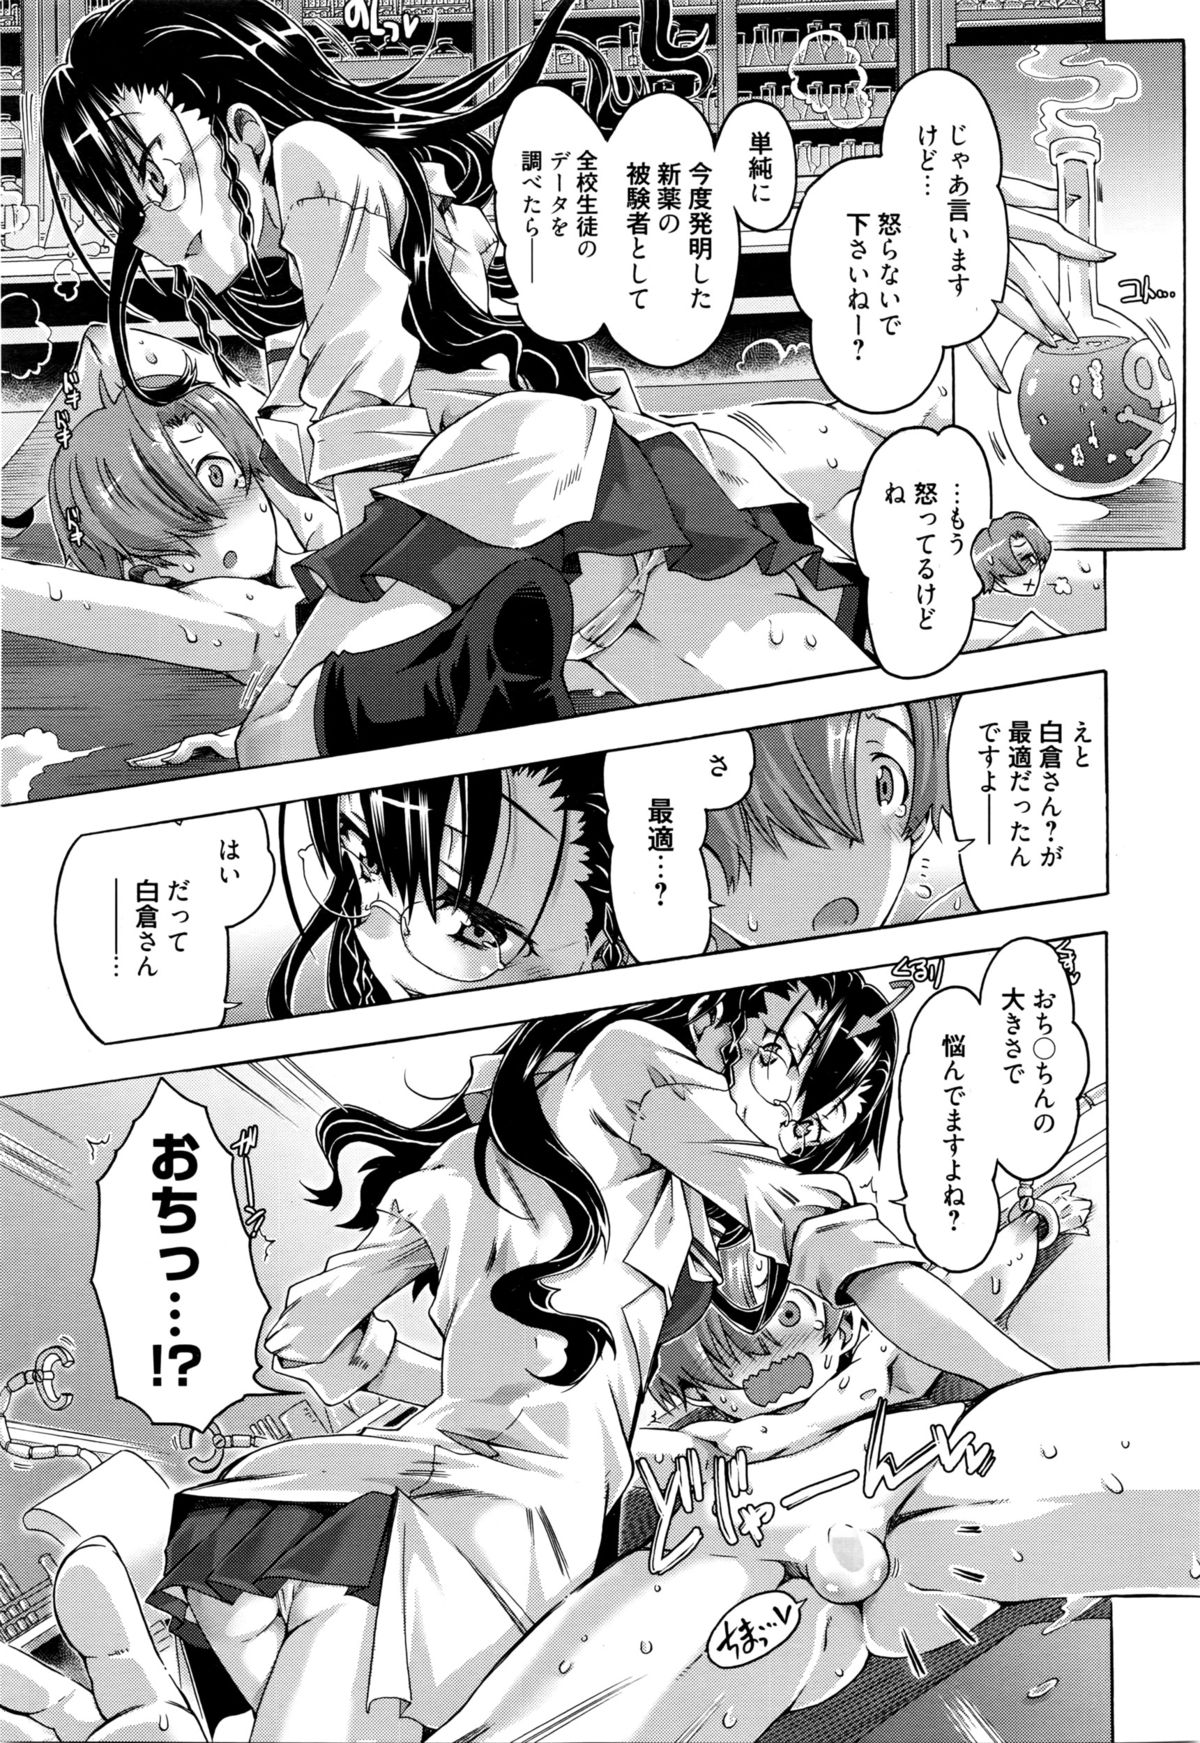 Manga Bangaichi 2016-03 page 10 full